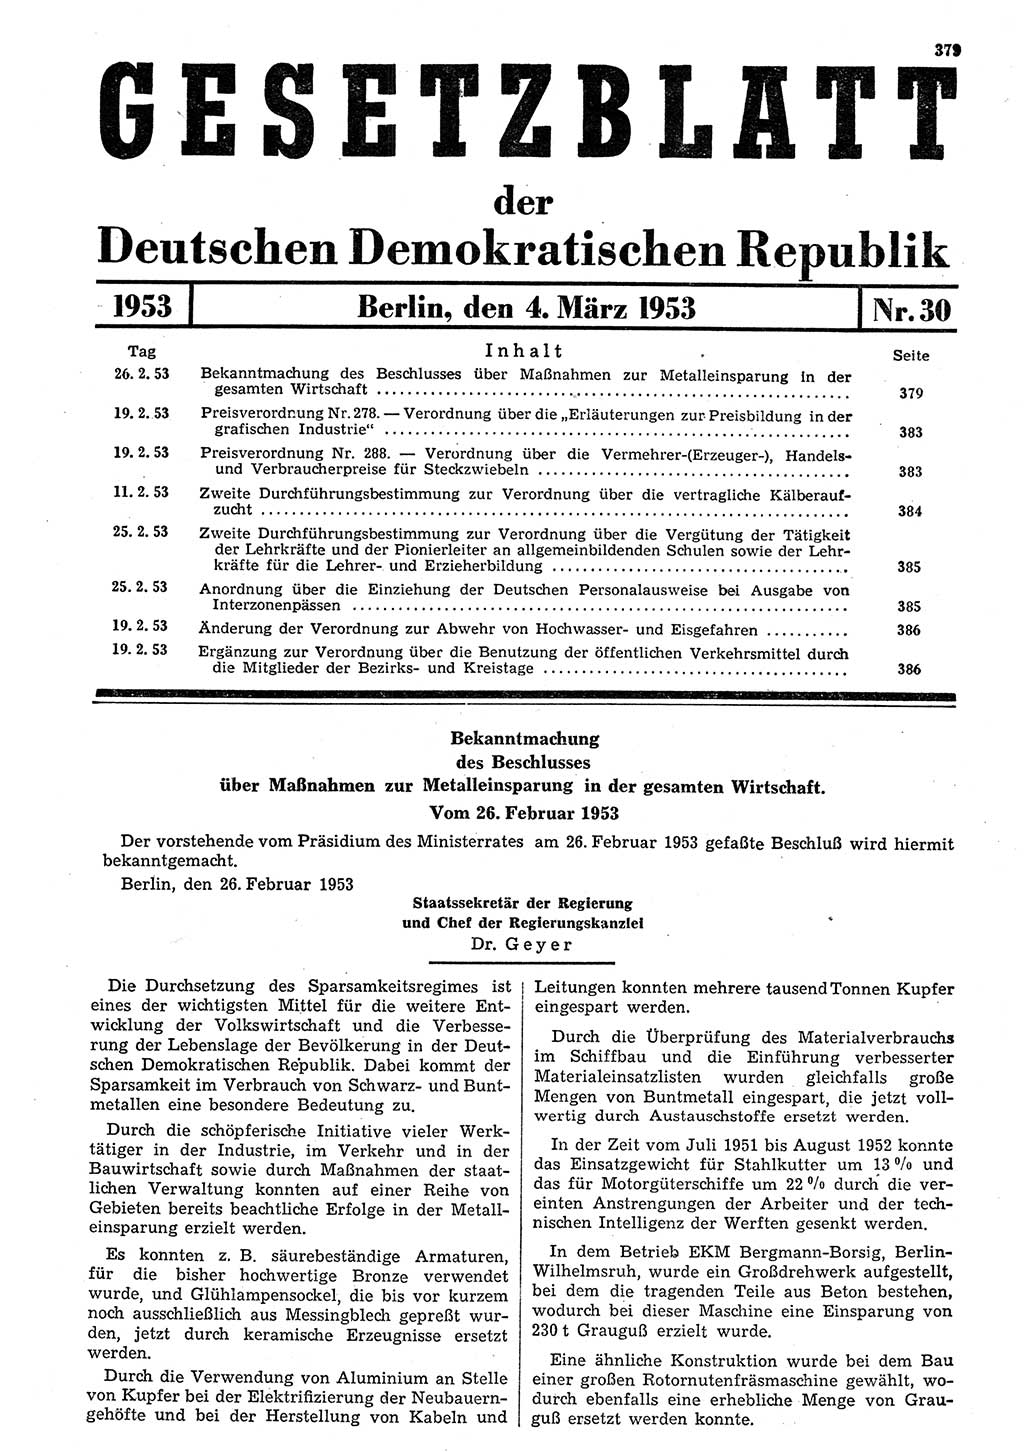 Gesetzblatt (GBl.) der Deutschen Demokratischen Republik (DDR) 1953, Seite 379 (GBl. DDR 1953, S. 379)